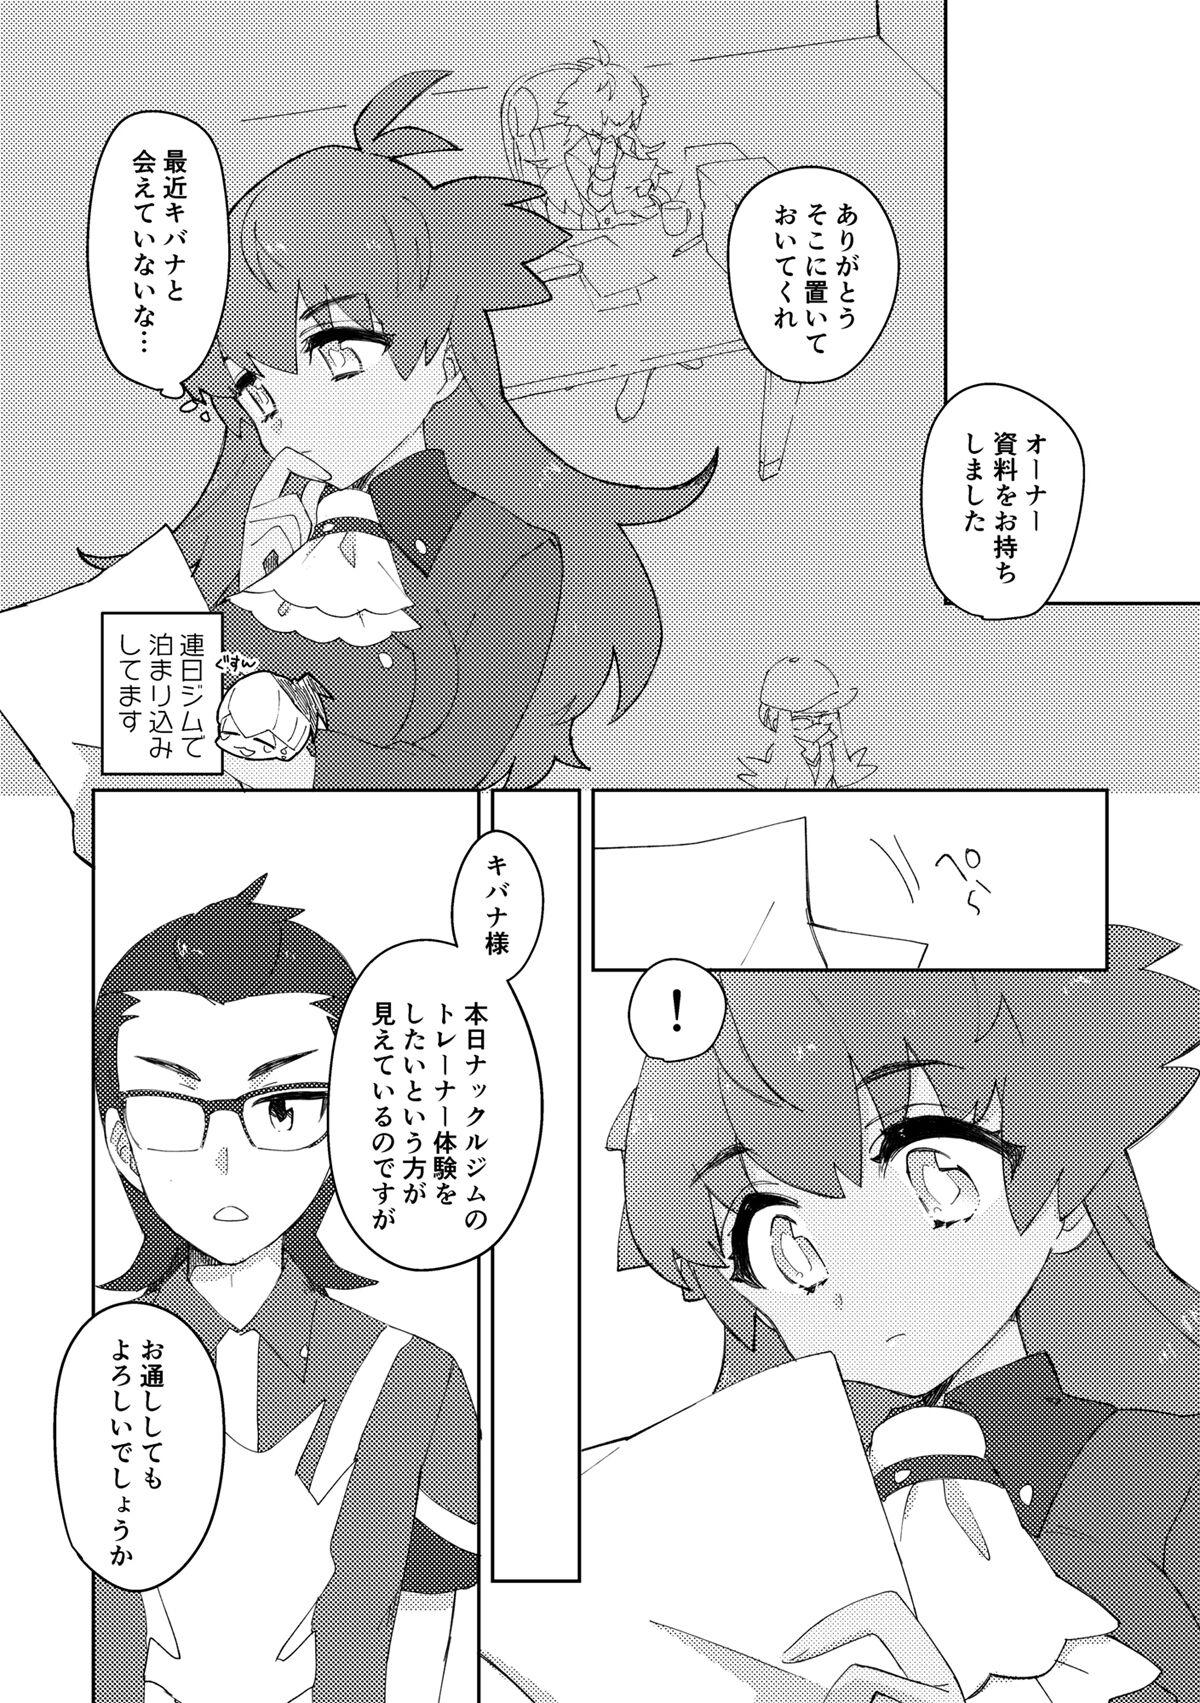 Mojada 愛しのジムトレちゃん - Pokemon | pocket monsters Gay Kissing - Page 3